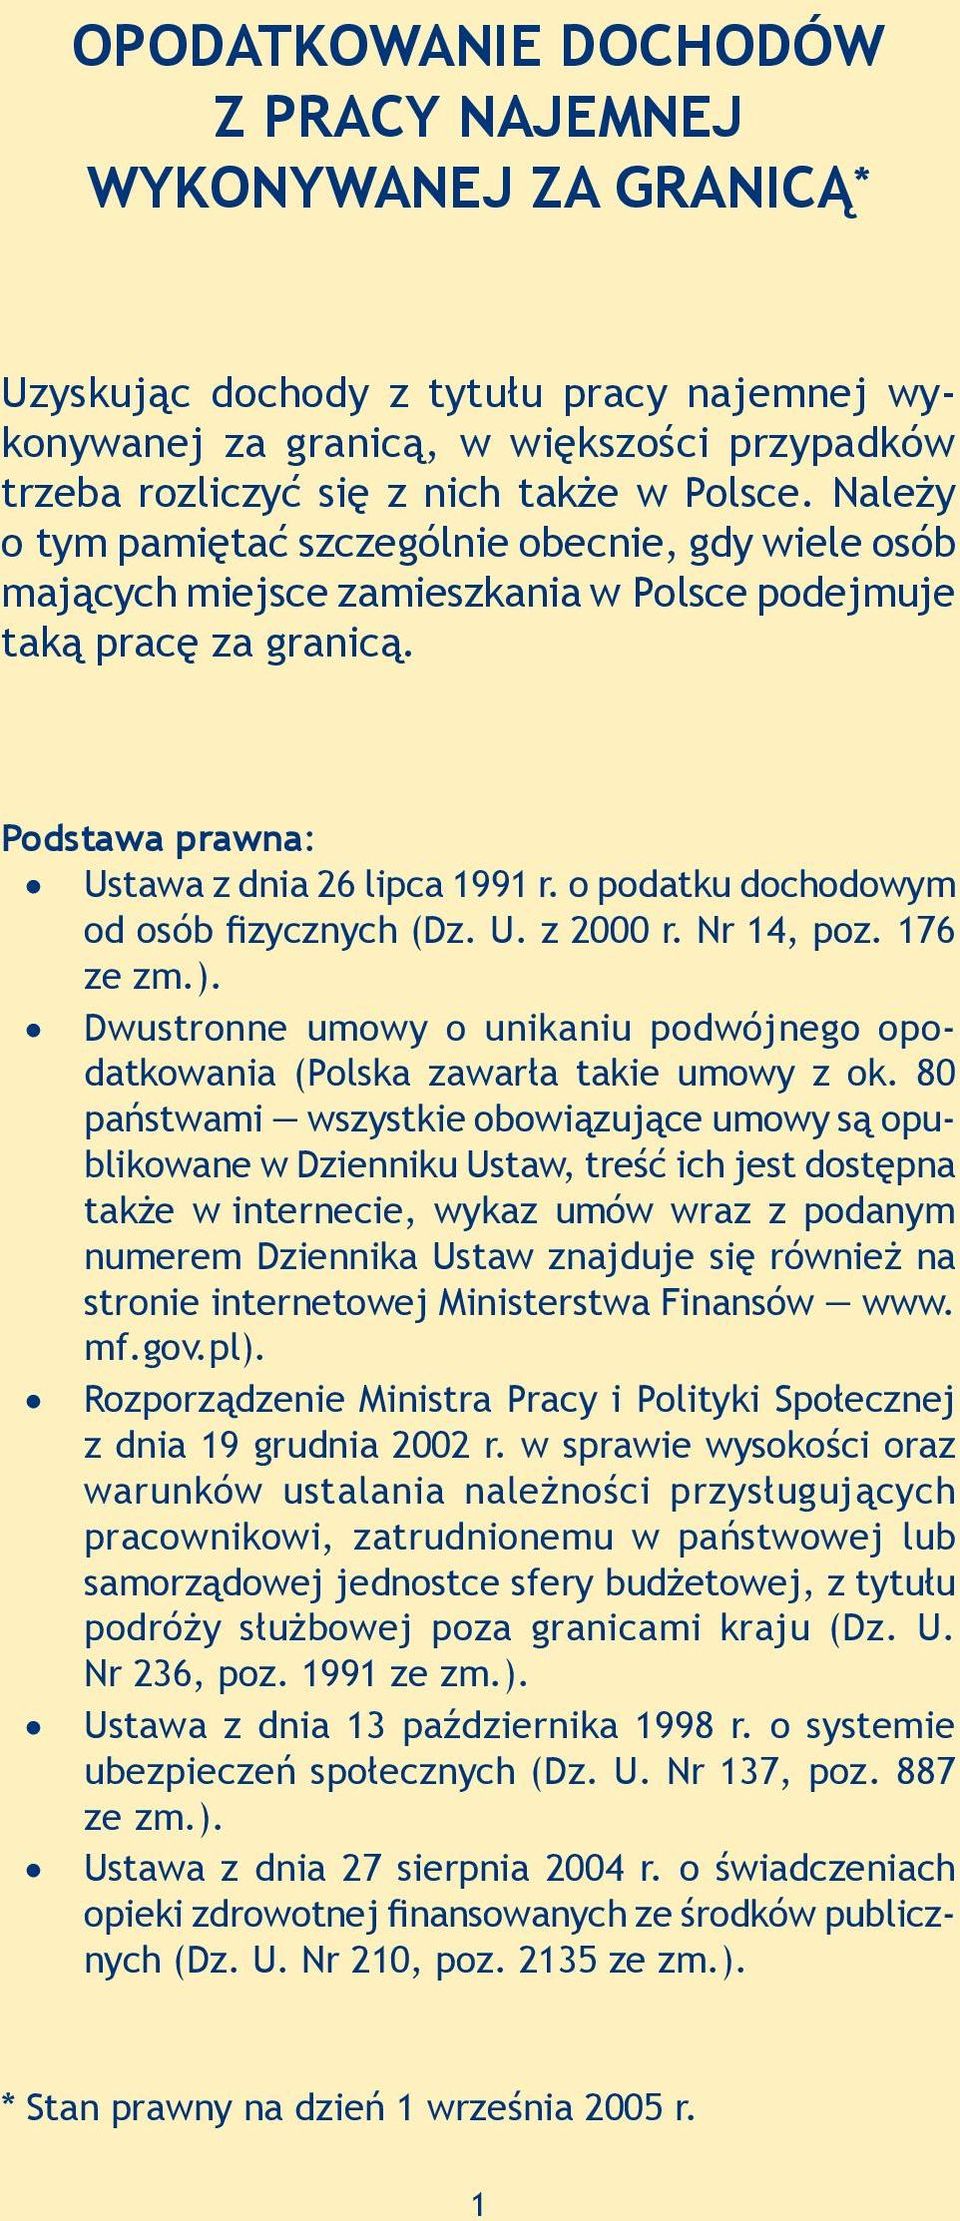 o podatku dochodowym od osób fizycznych (Dz. U. z 2000 r. Nr 14, poz. 176 ze zm.). Dwustronne umowy o unikaniu podwójnego opodatkowania (Polska zawarła takie umowy z ok.